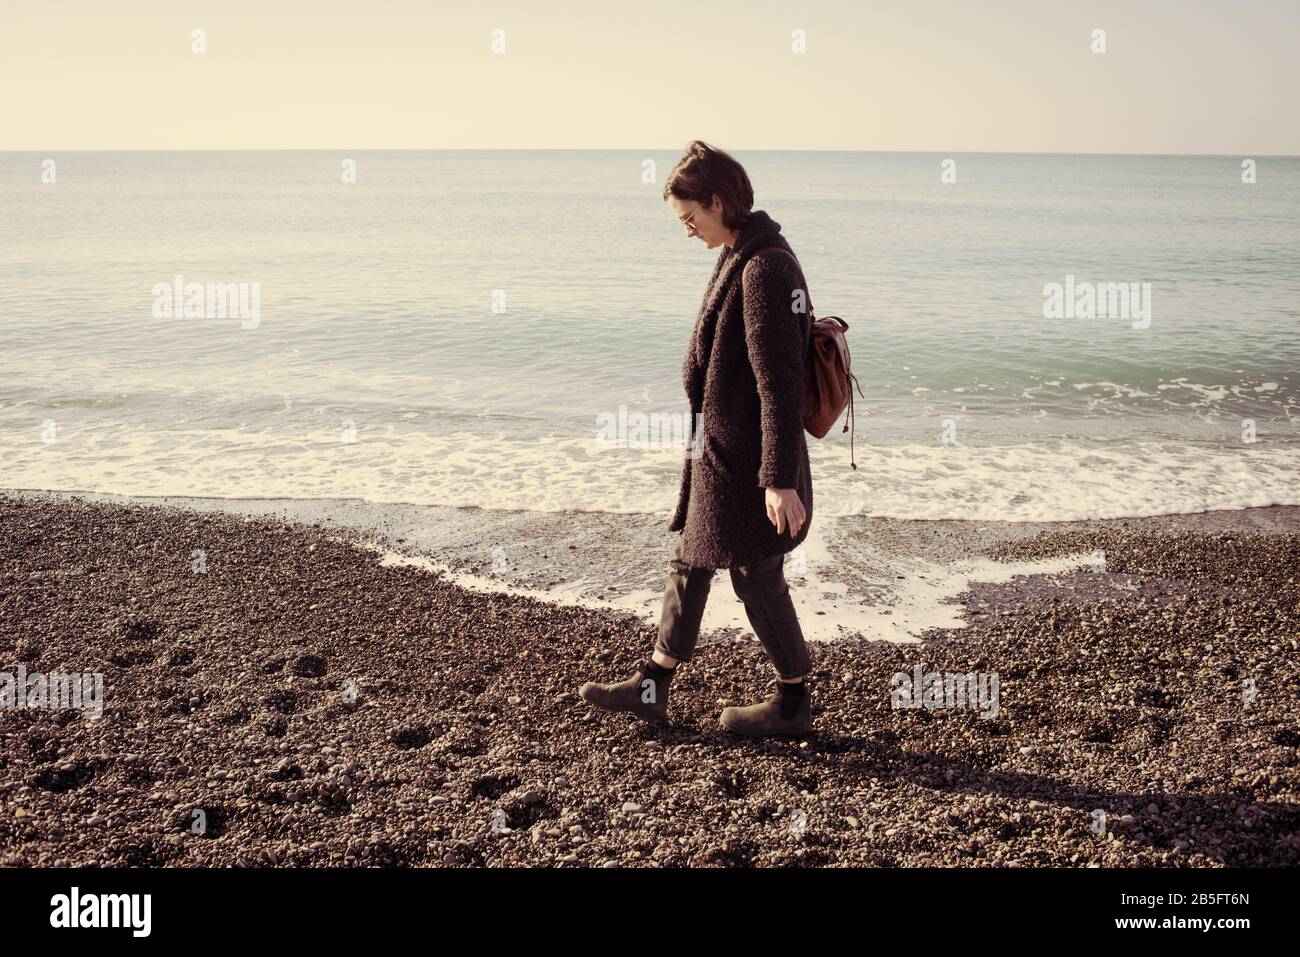 Mujer hipster modelo con gafas de sol y abrigo de invierno caminar en una playa de guijarros con el mar tranquilo vacío detrás. Efecto vintage mate. Foto de stock